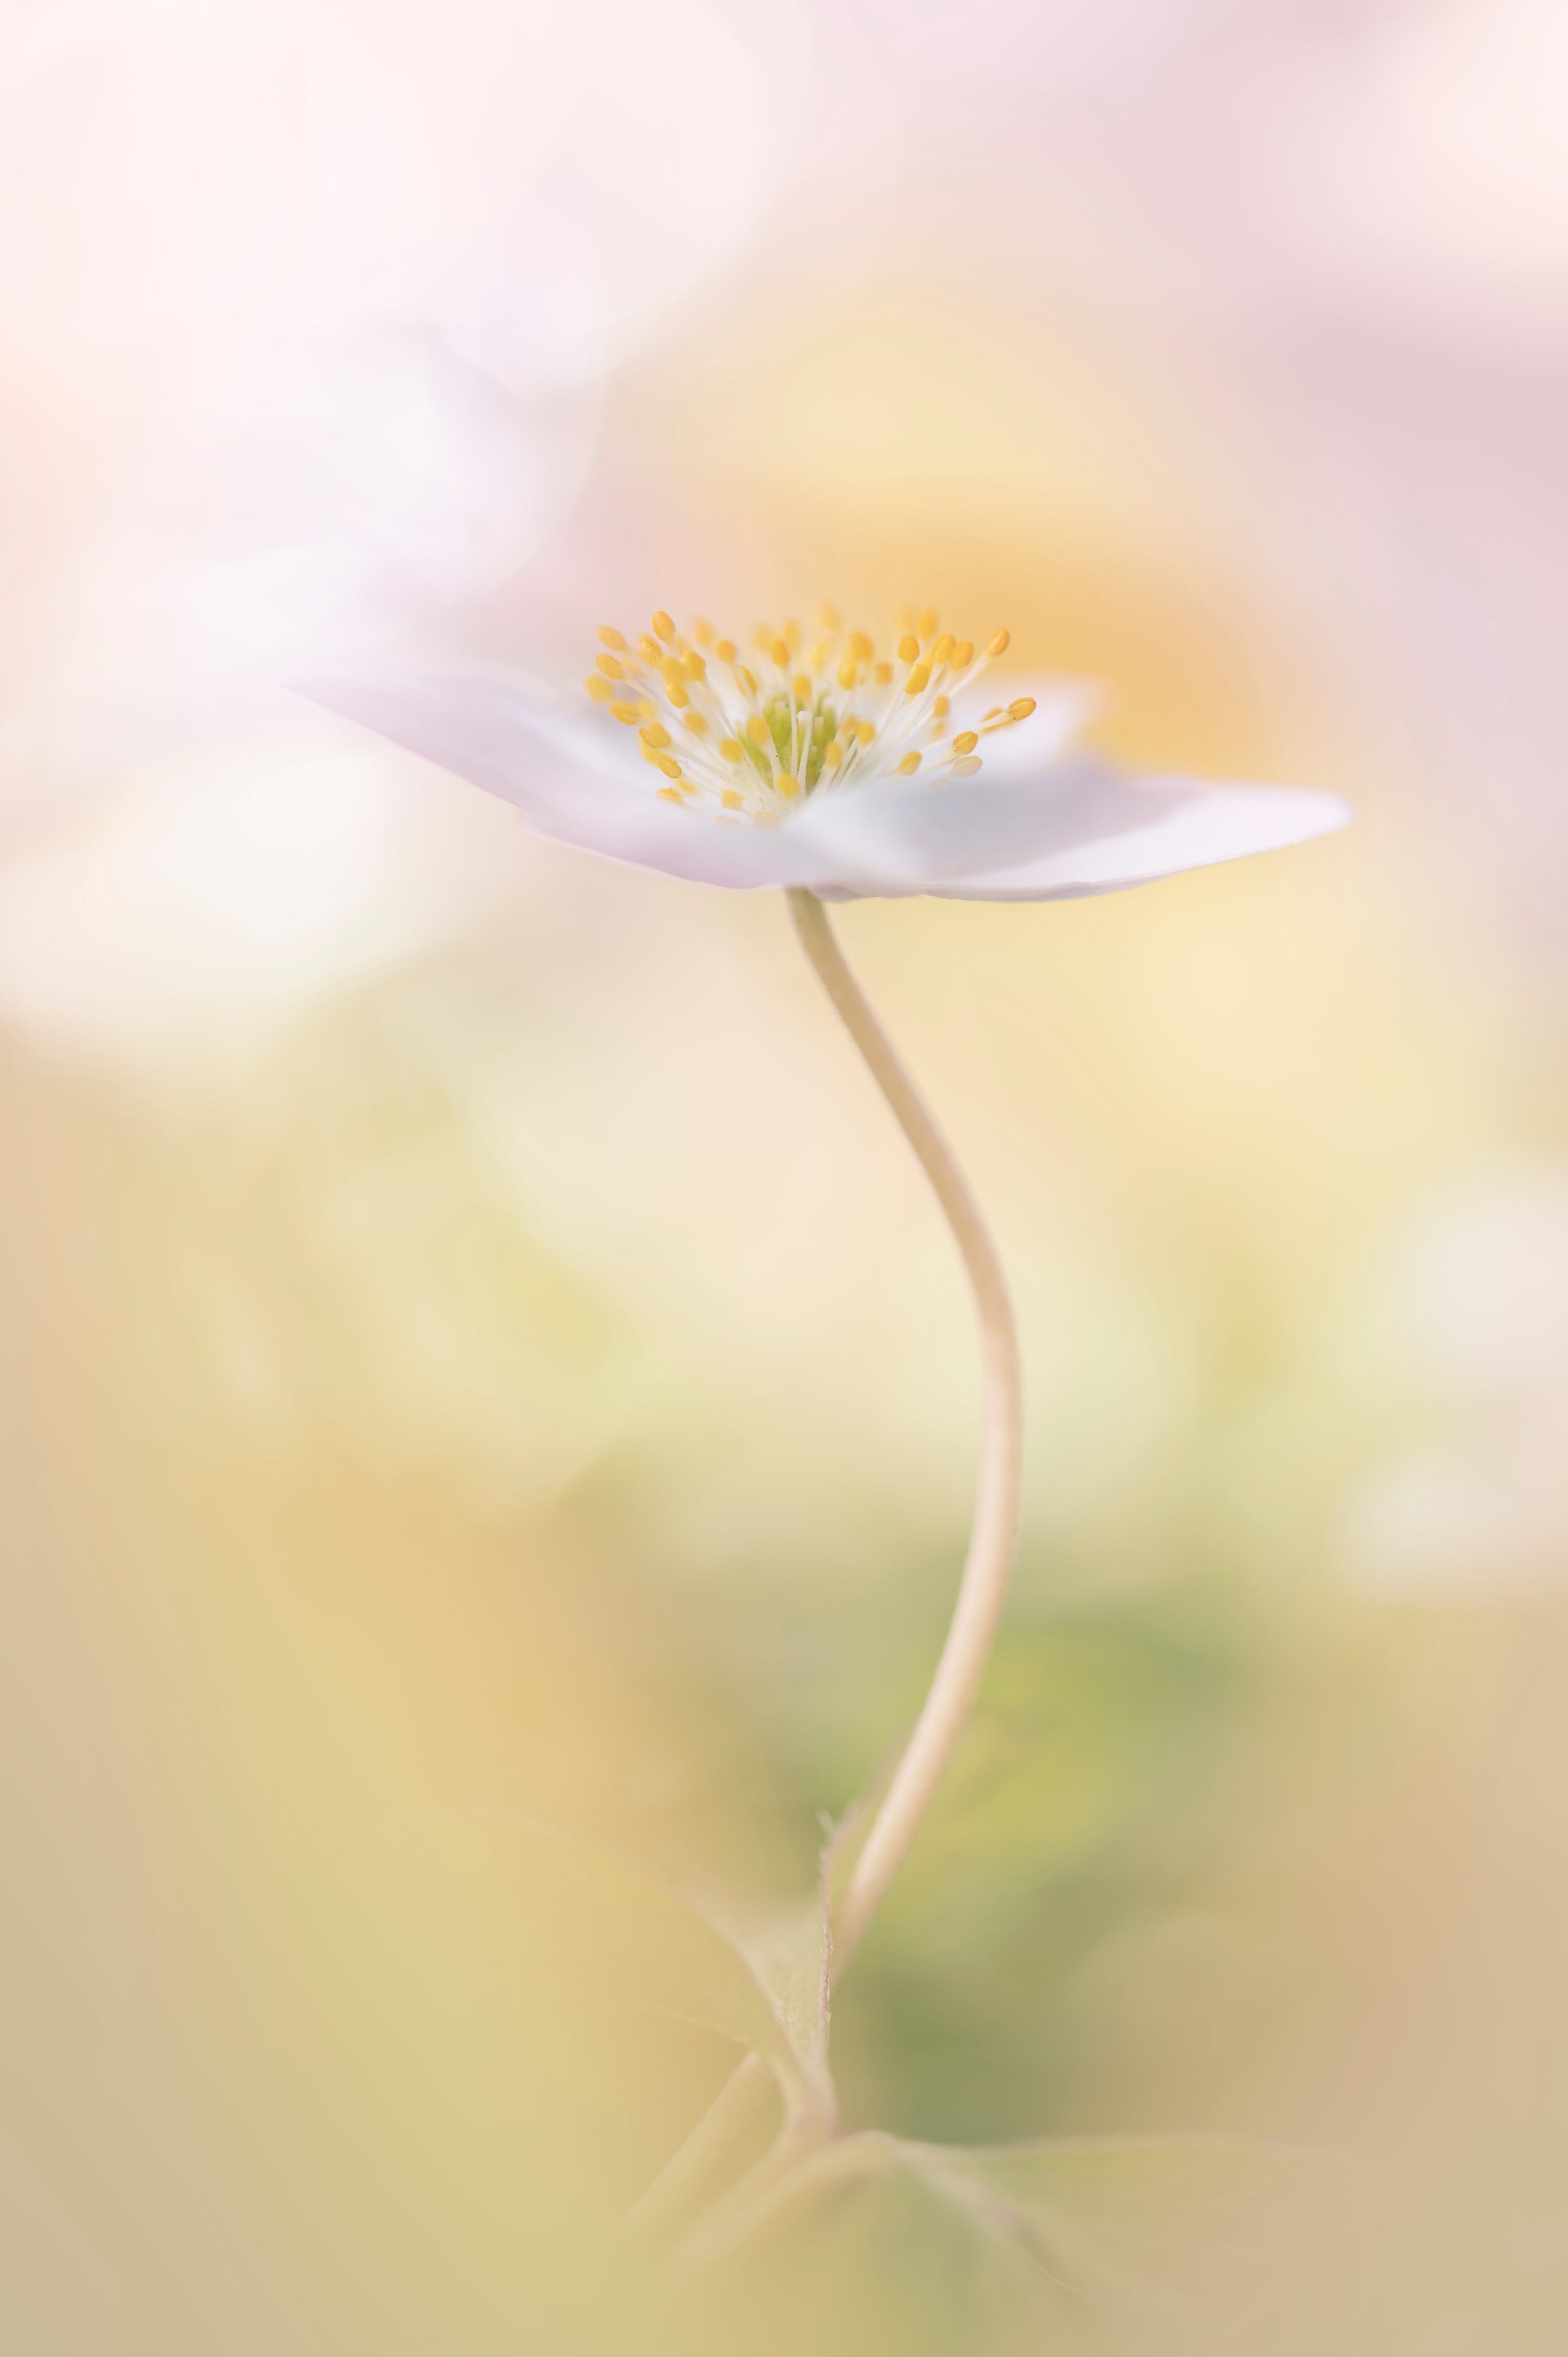 Kunstfotografi af en hvid blomst